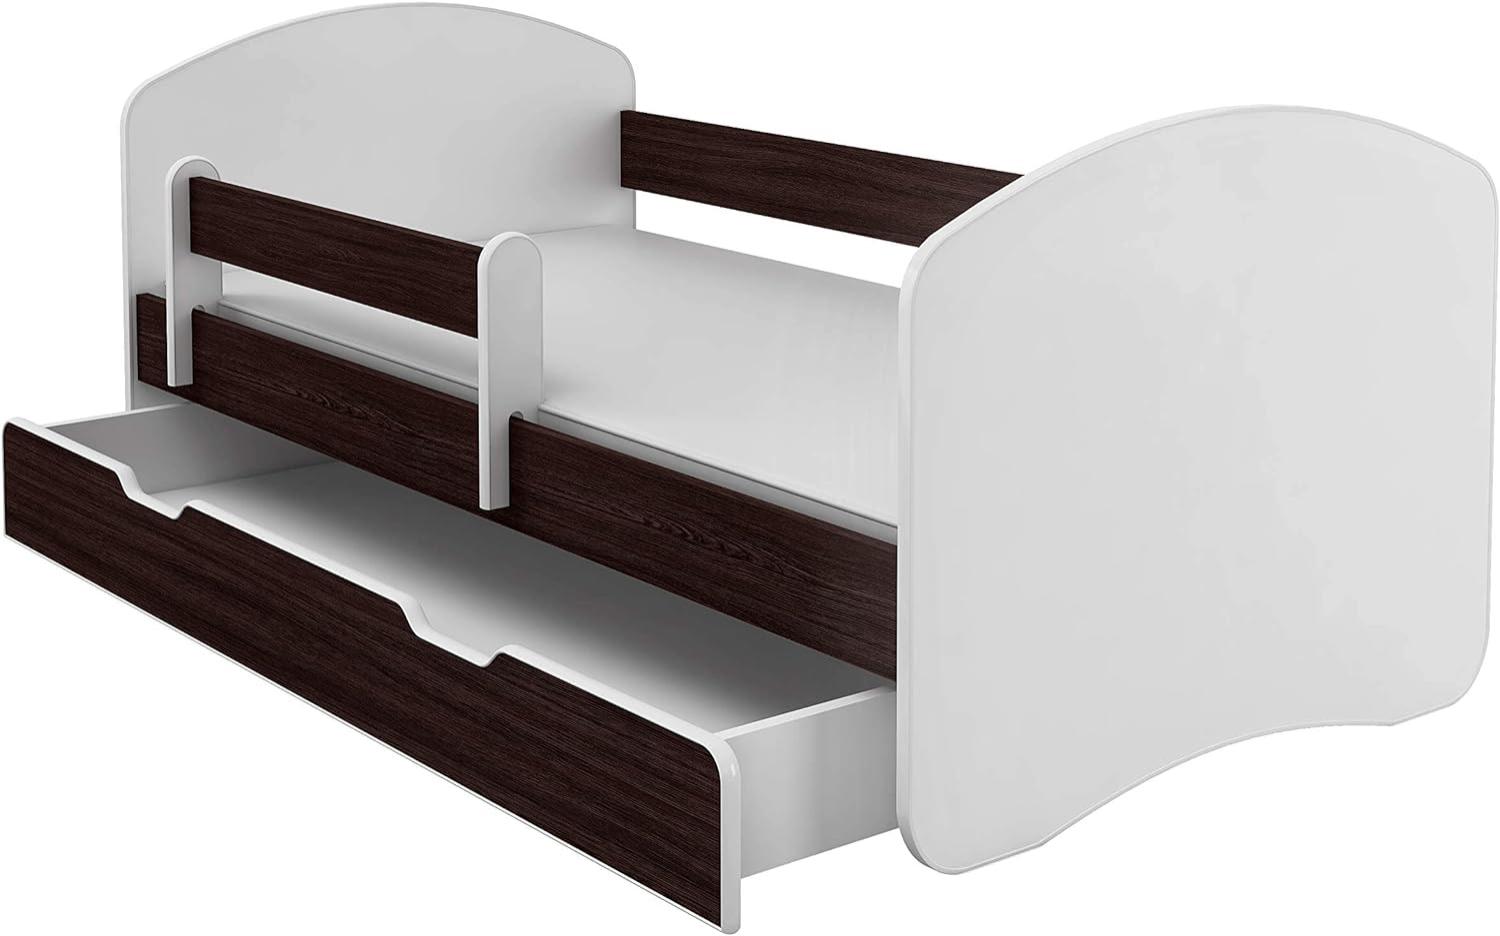 Kinderbett Jugendbett mit einer Schublade und Matratze Weiß ACMA II (140x70 cm + Schublade, Holz Wenge) Bild 1